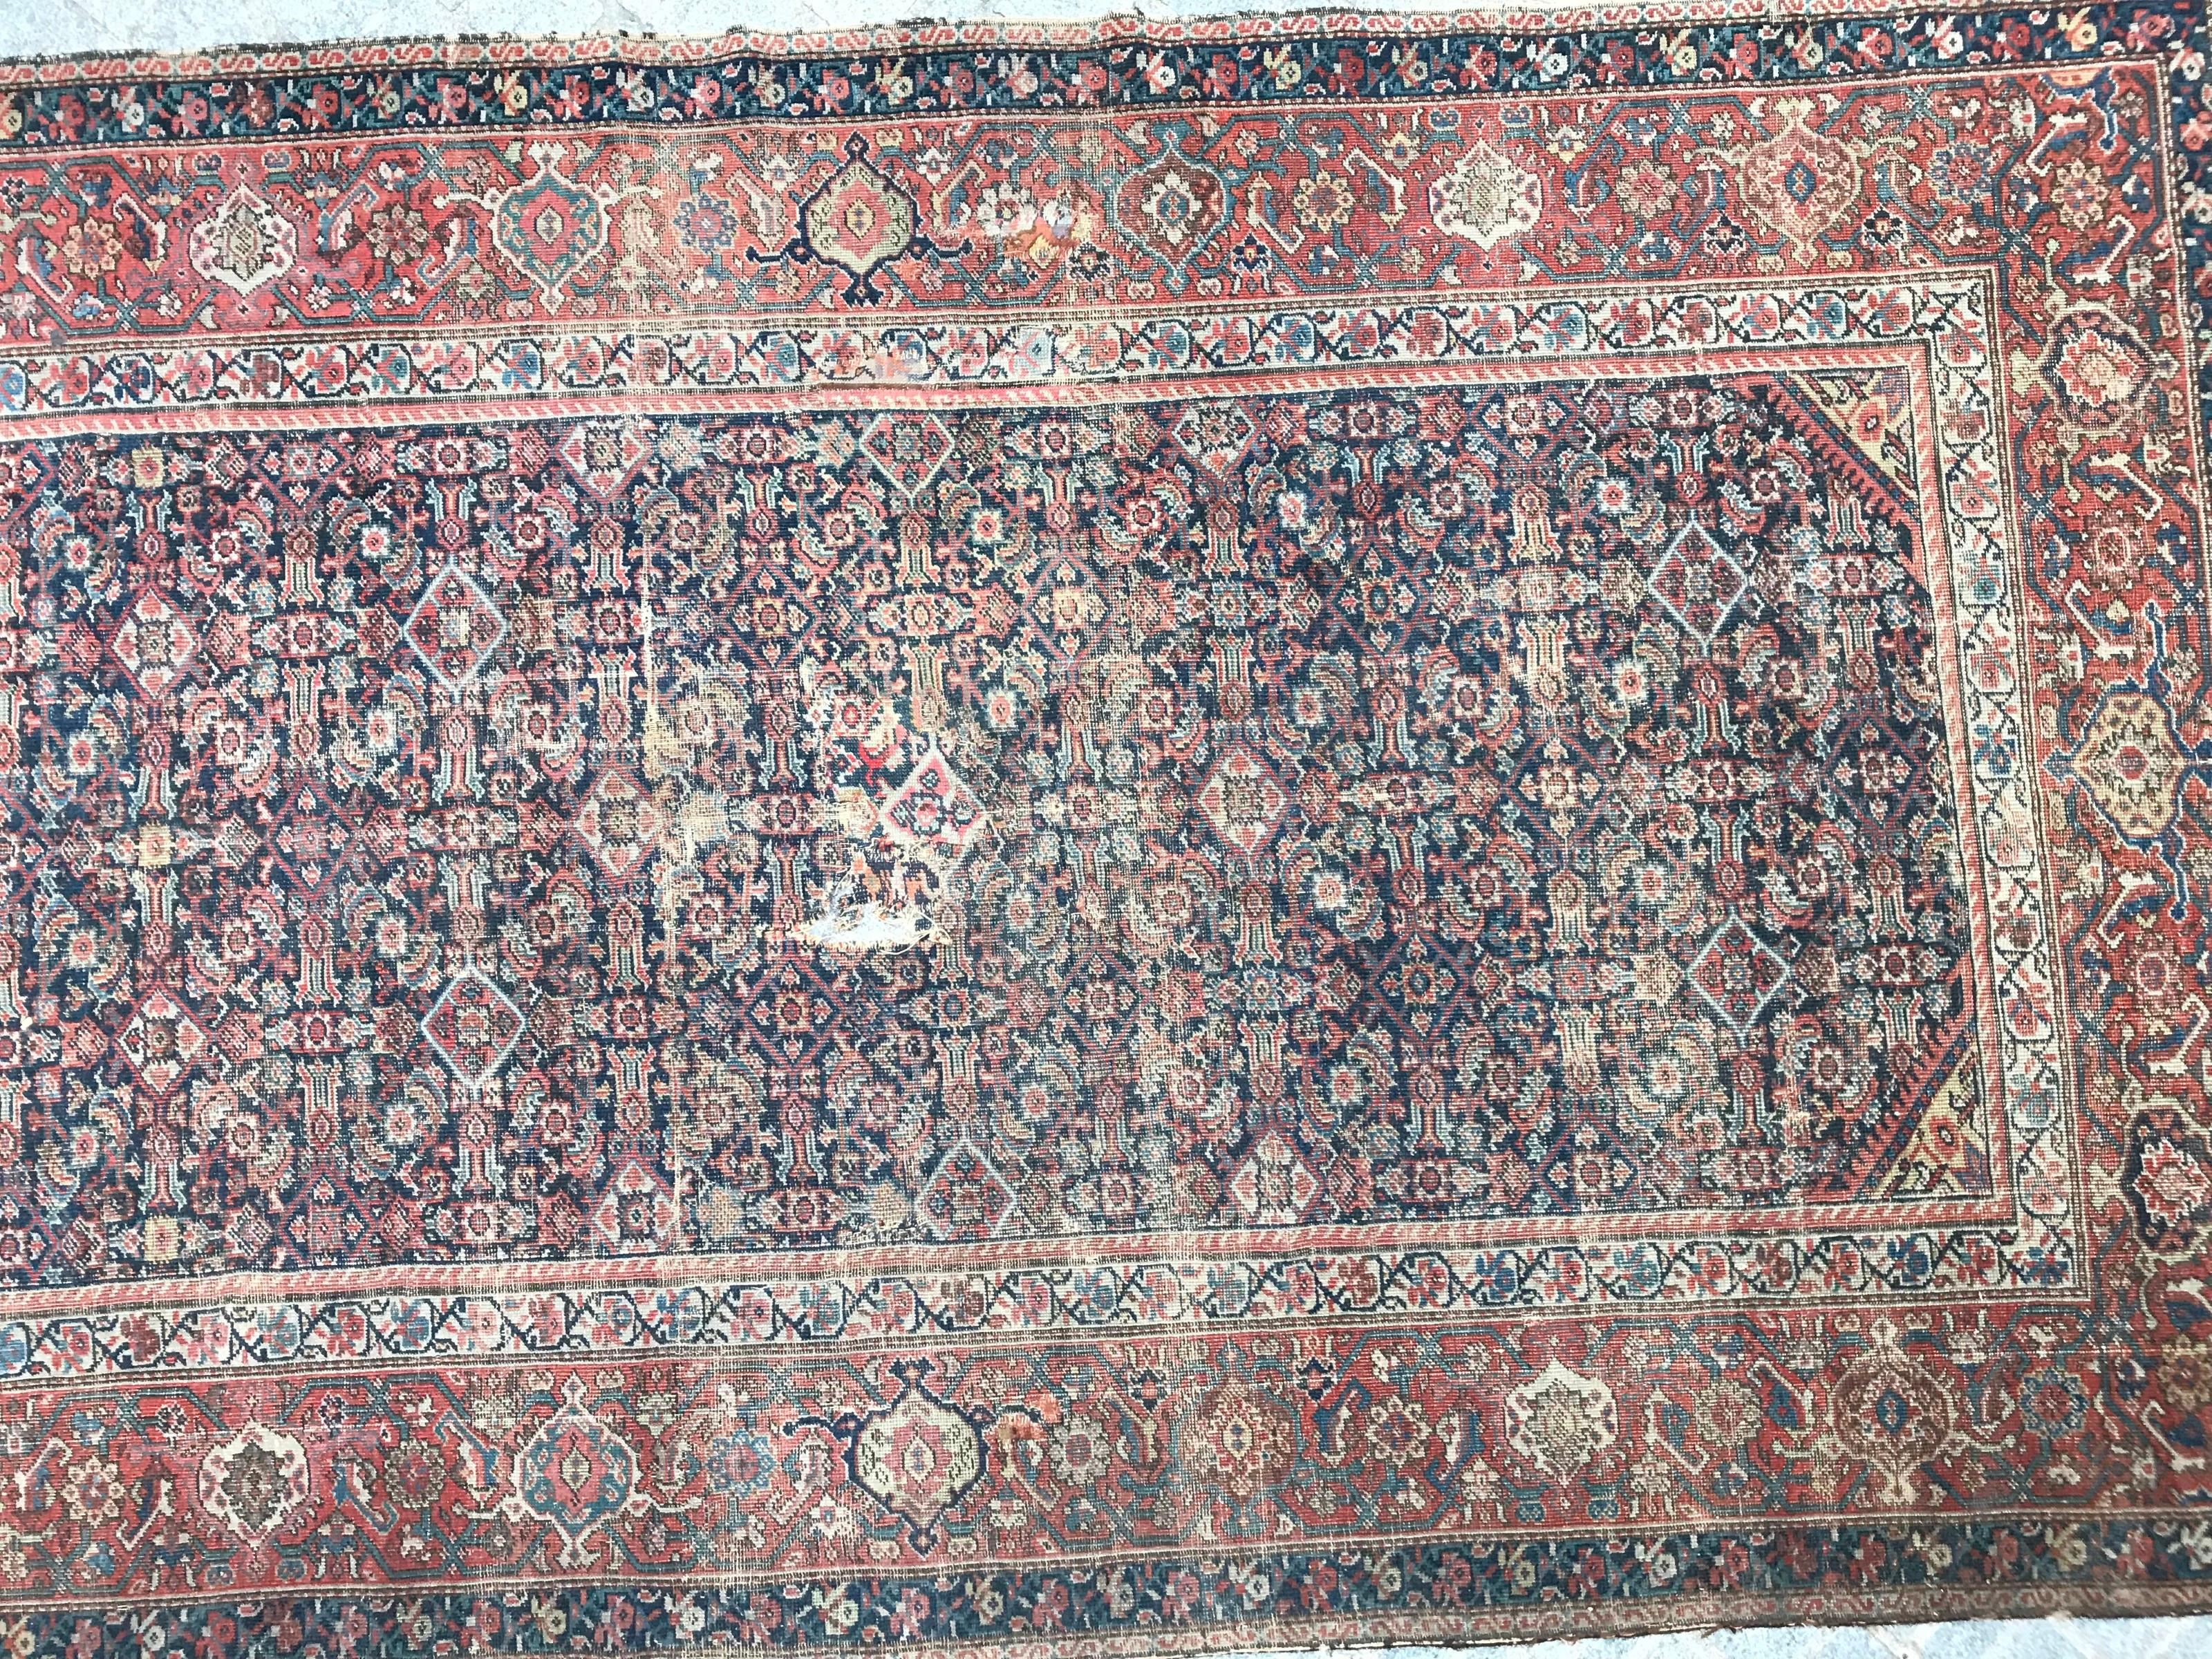 Schöner langer Teppich aus dem späten 19. Jahrhundert mit dekorativem Herati-Muster und natürlichen Farben mit dunkelblauen, roten, grünen und gelben Tönen, vollständig handgeknüpft mit Wollsamt auf Baumwollgrund.